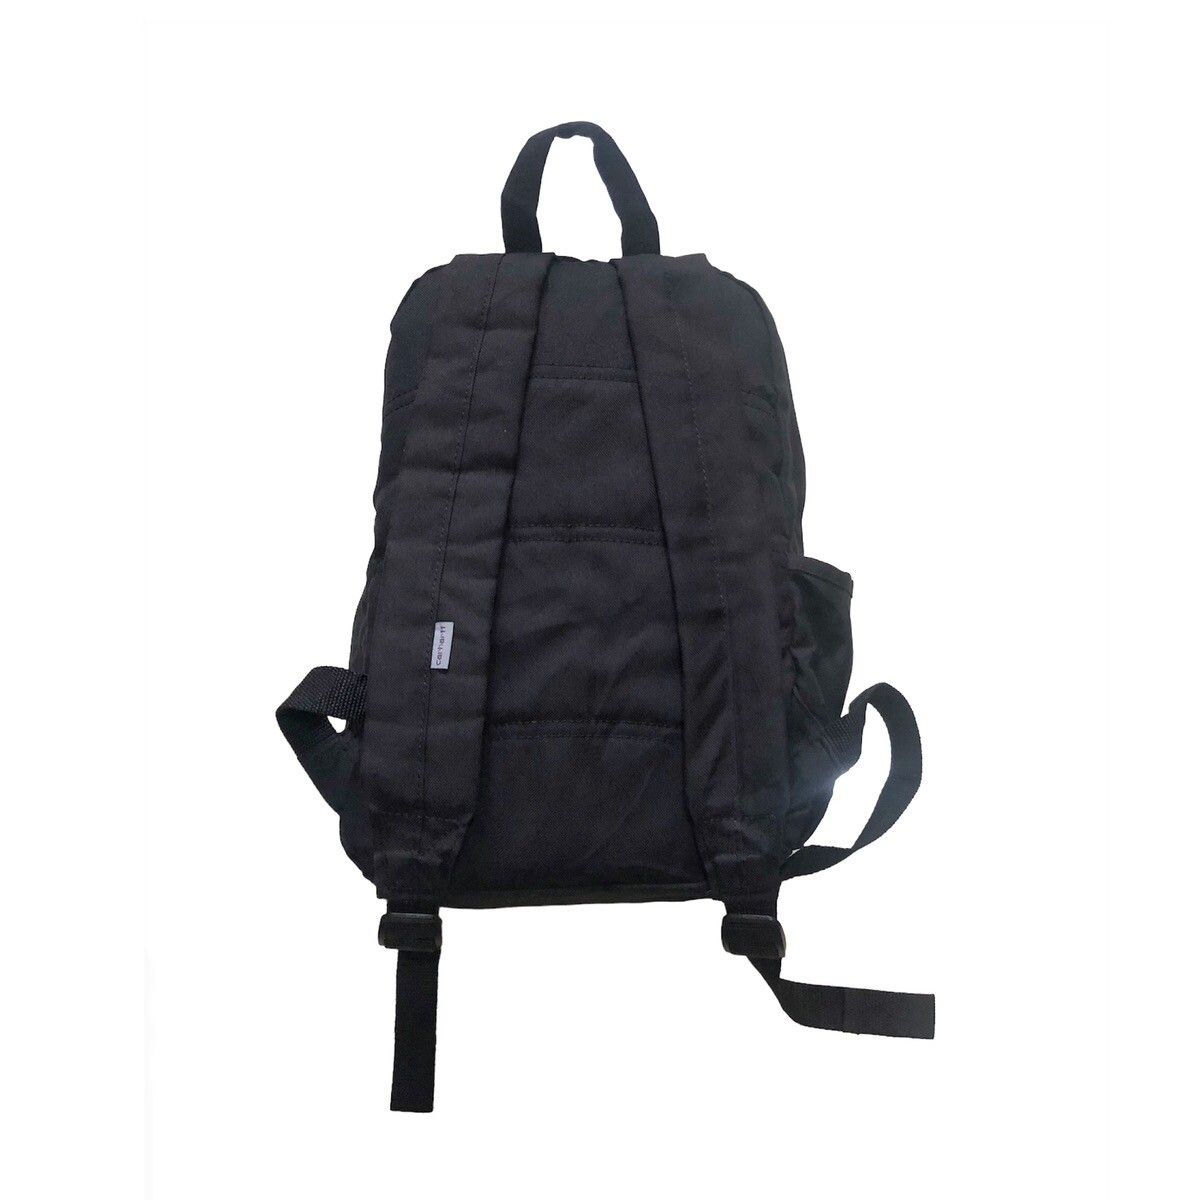 Carhart Wip Backpack - 2